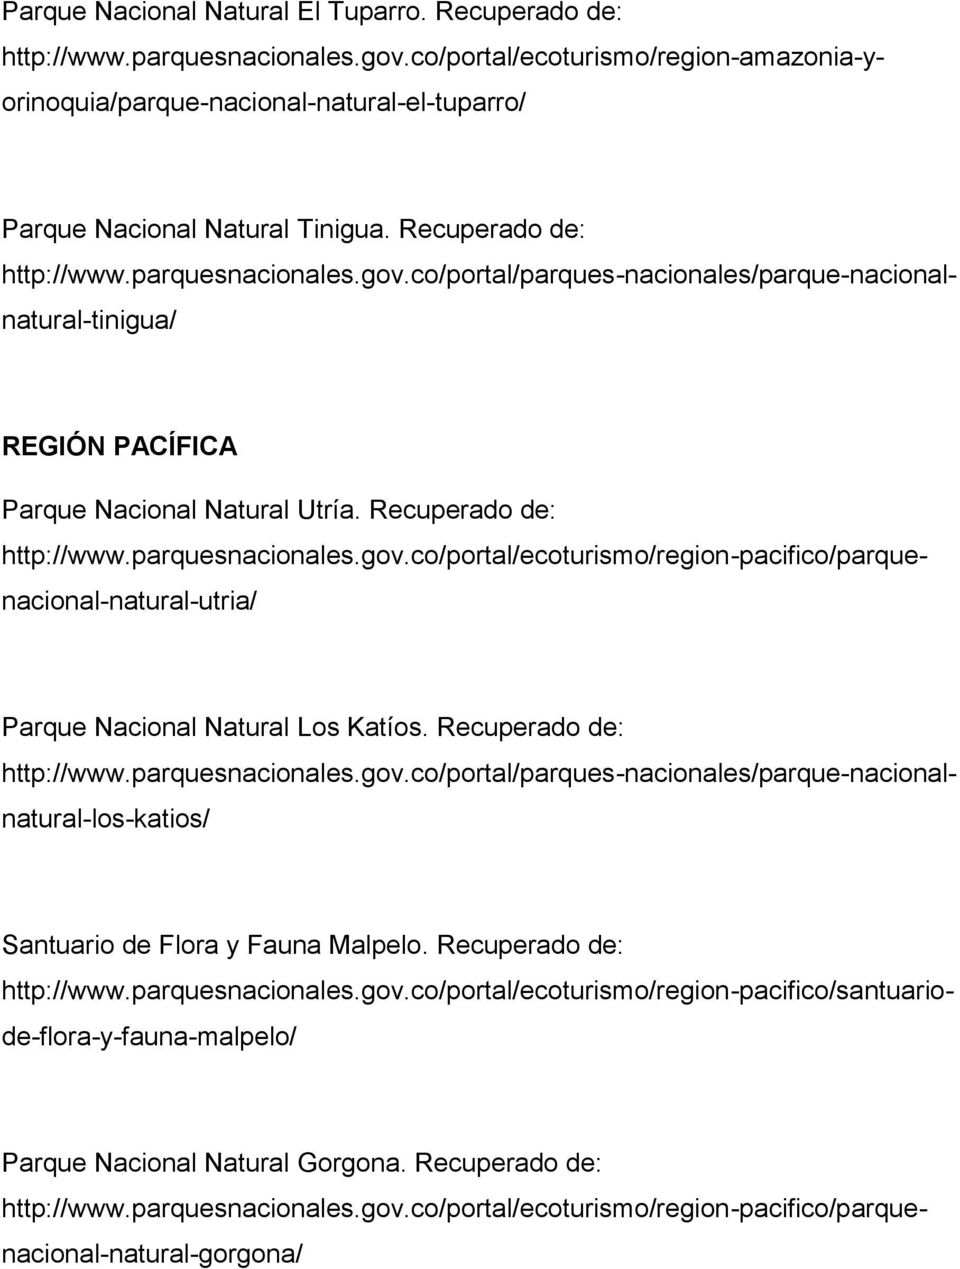 parquesnacionales.gov.co/portal/parques-nacionales/parque-nacionalnatural-tinigua/ REGIÓN PACÍFICA Parque Nacional Natural Utría. Recuperado de: http://www.parquesnacionales.gov.co/portal/ecoturismo/region-pacifico/parquenacional-natural-utria/ http://www.